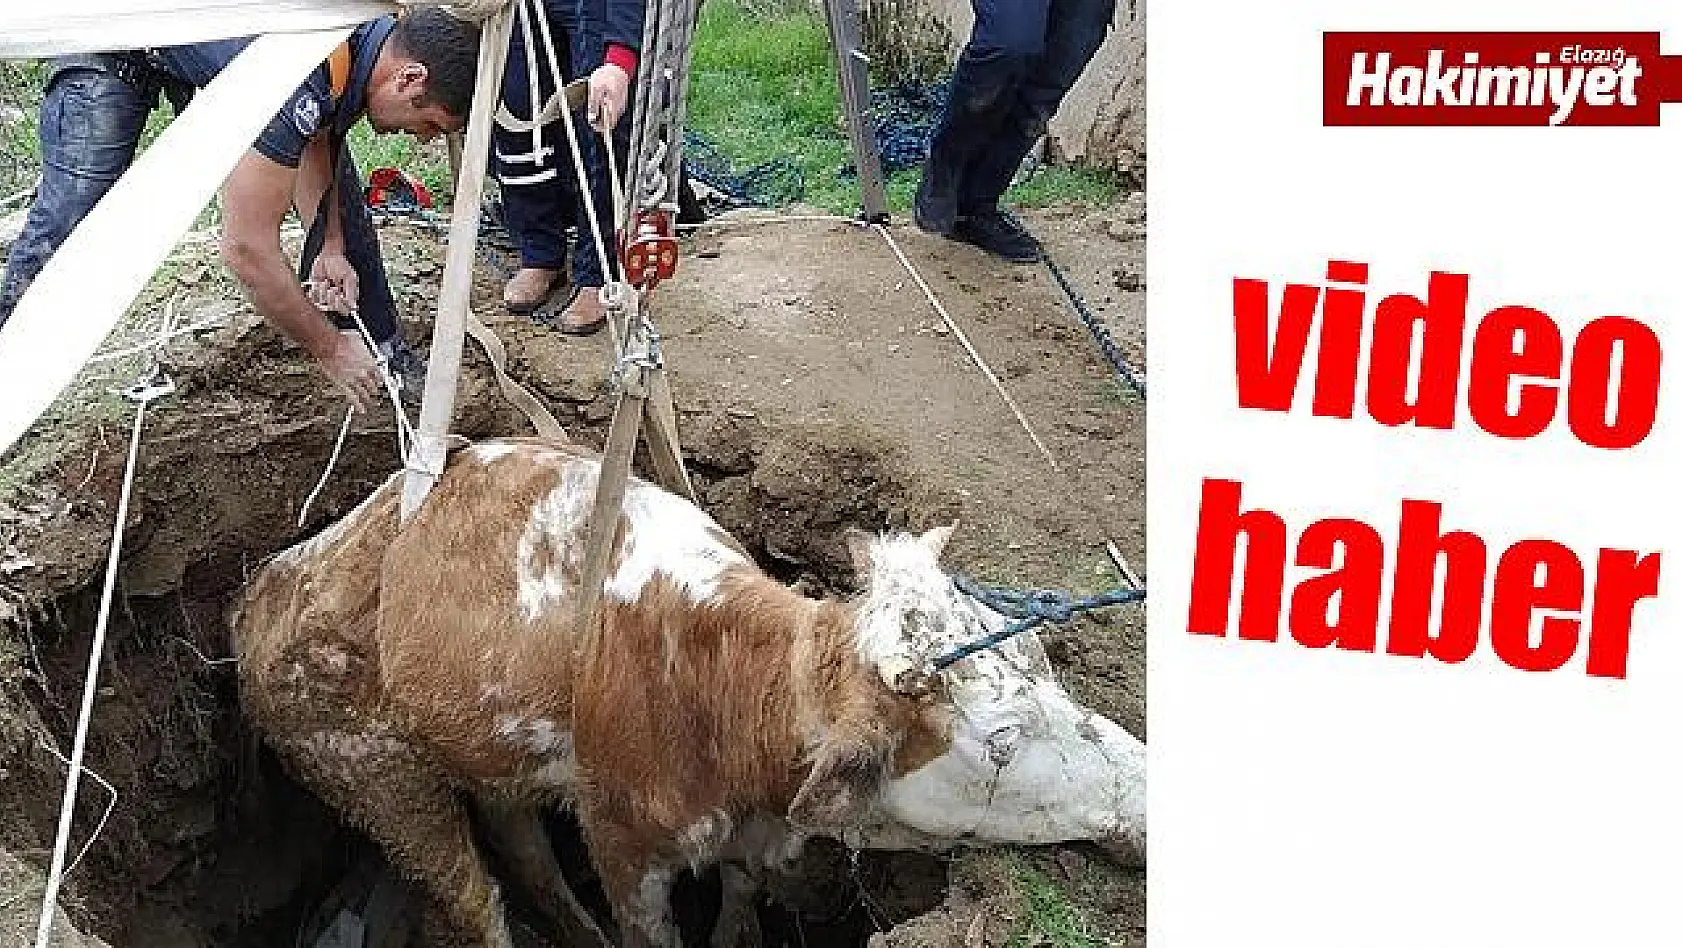 Kuyuya düşen inek, itfaiye ekipleri tarafından kurtarıldı